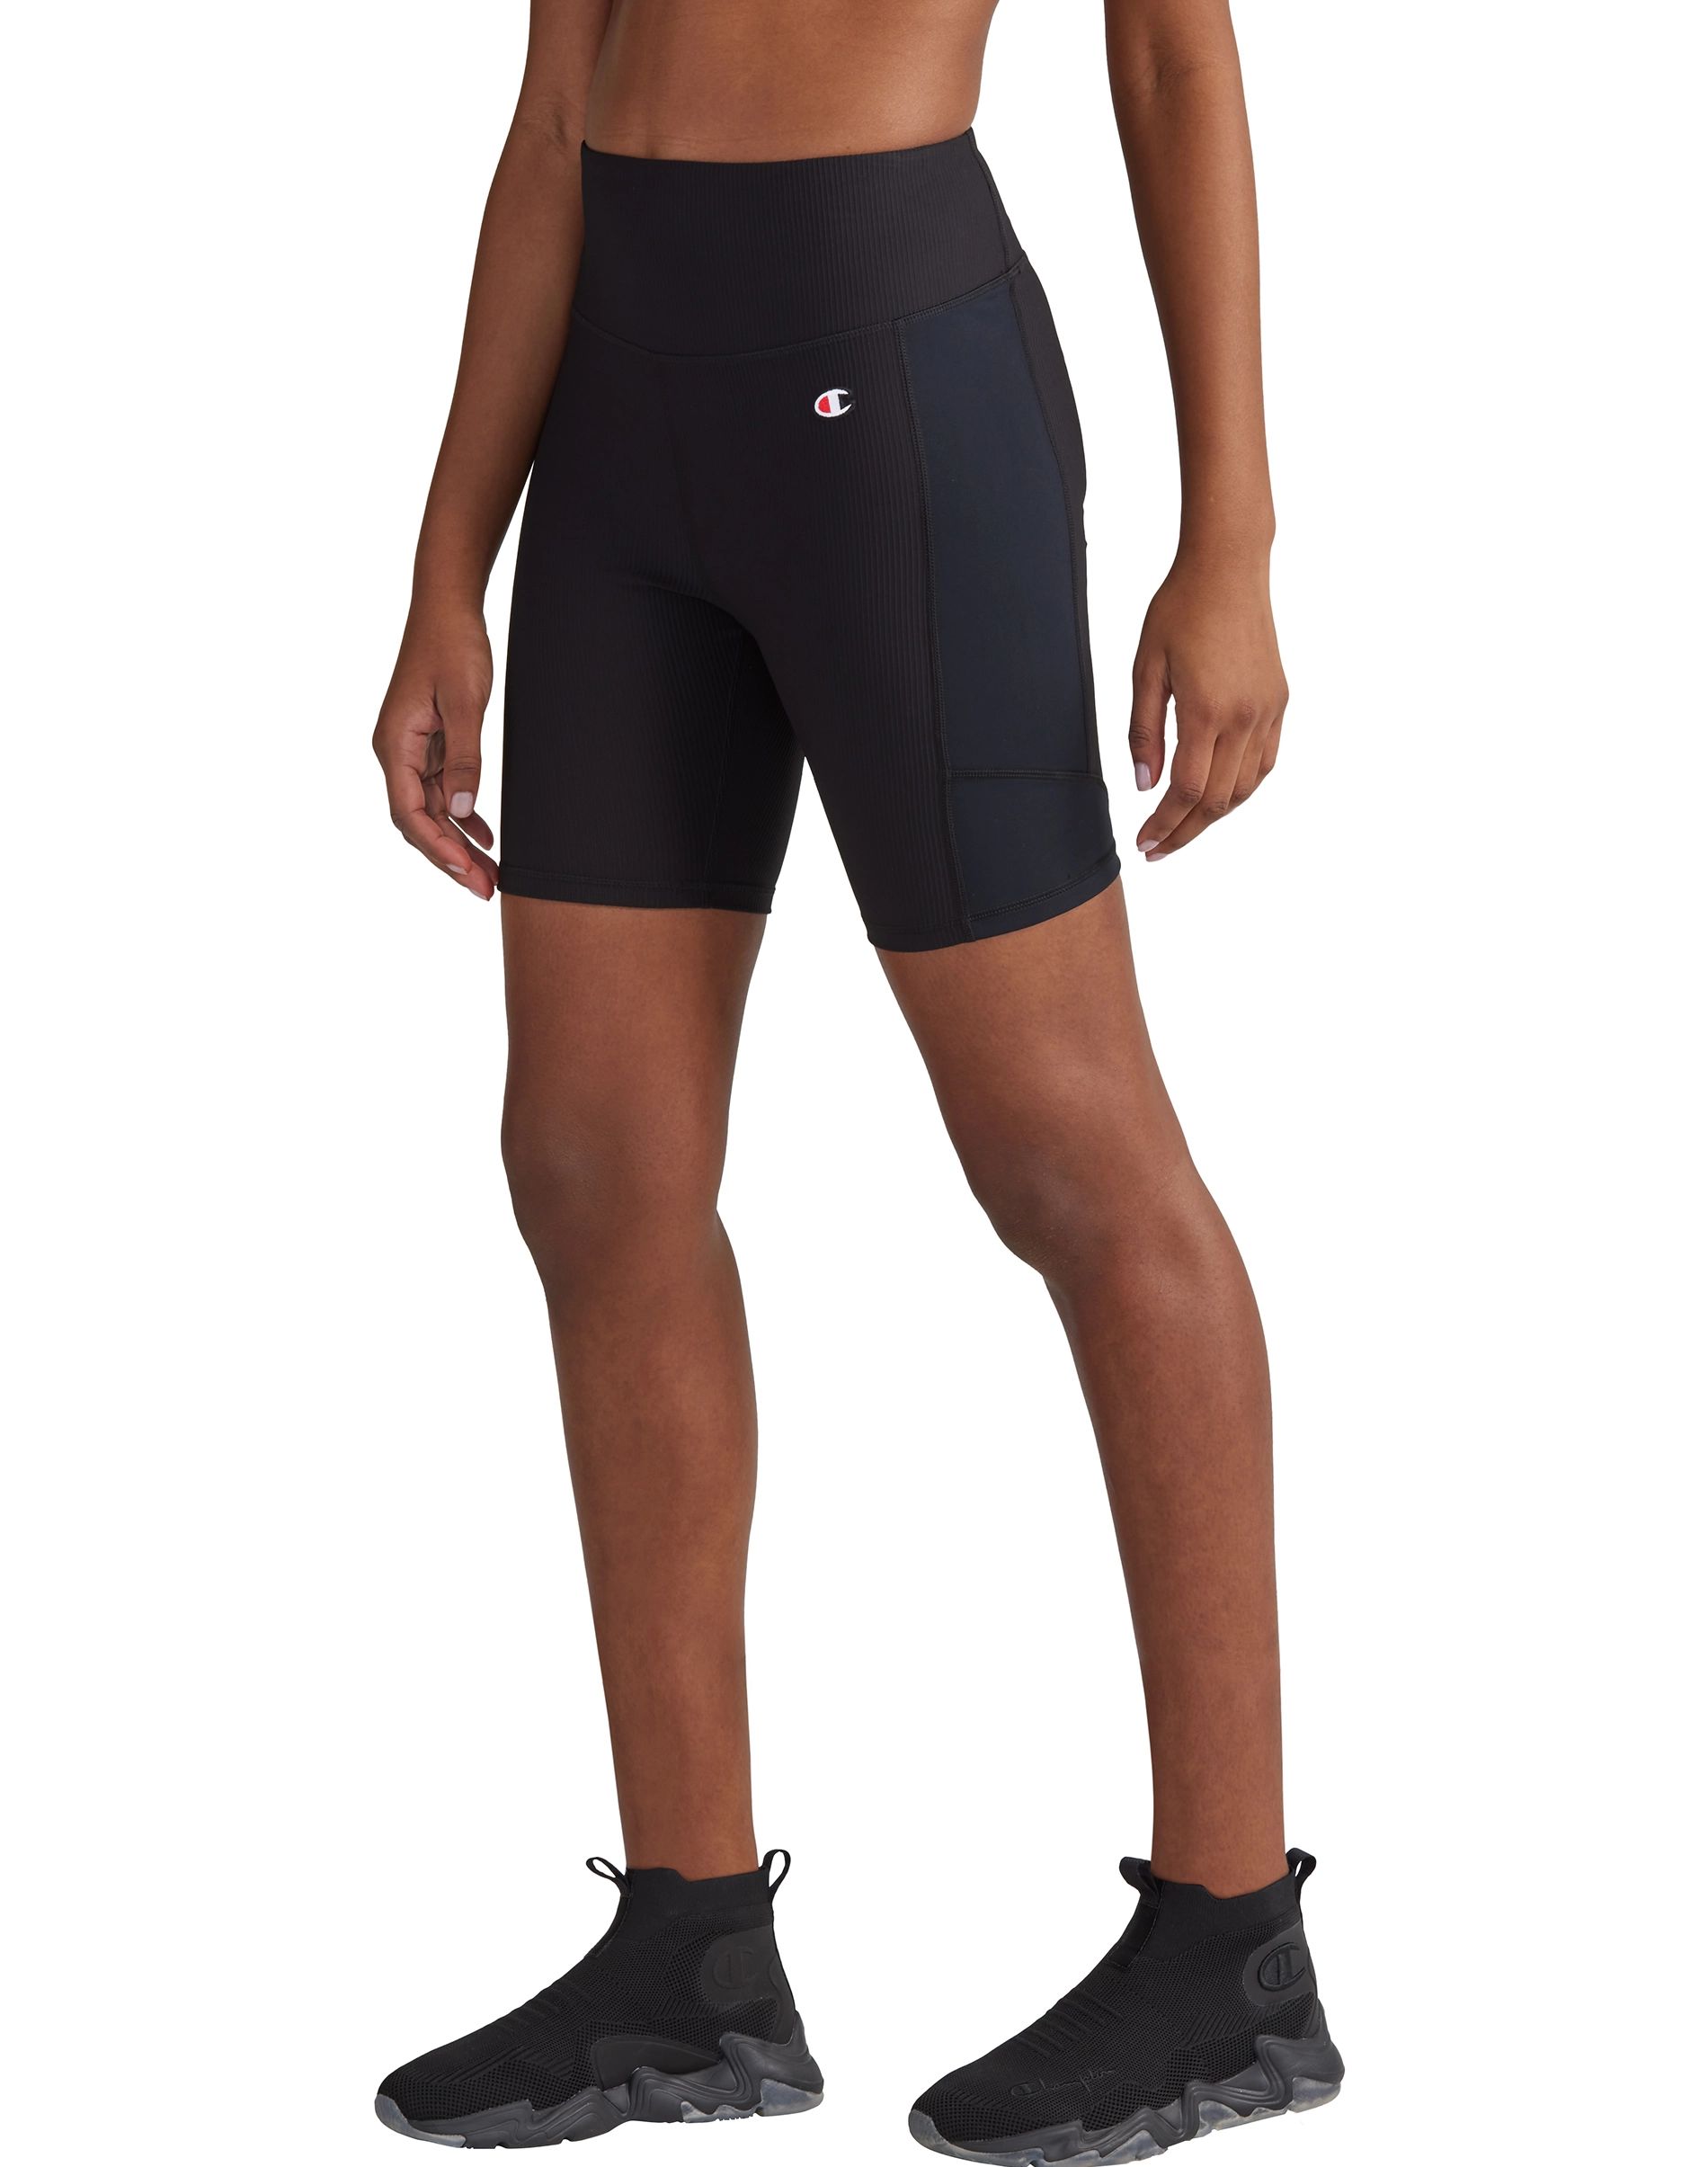 Ribbed Bike Shorts, 7" | ChampionUSA.com (Hanesbrands Inc.)